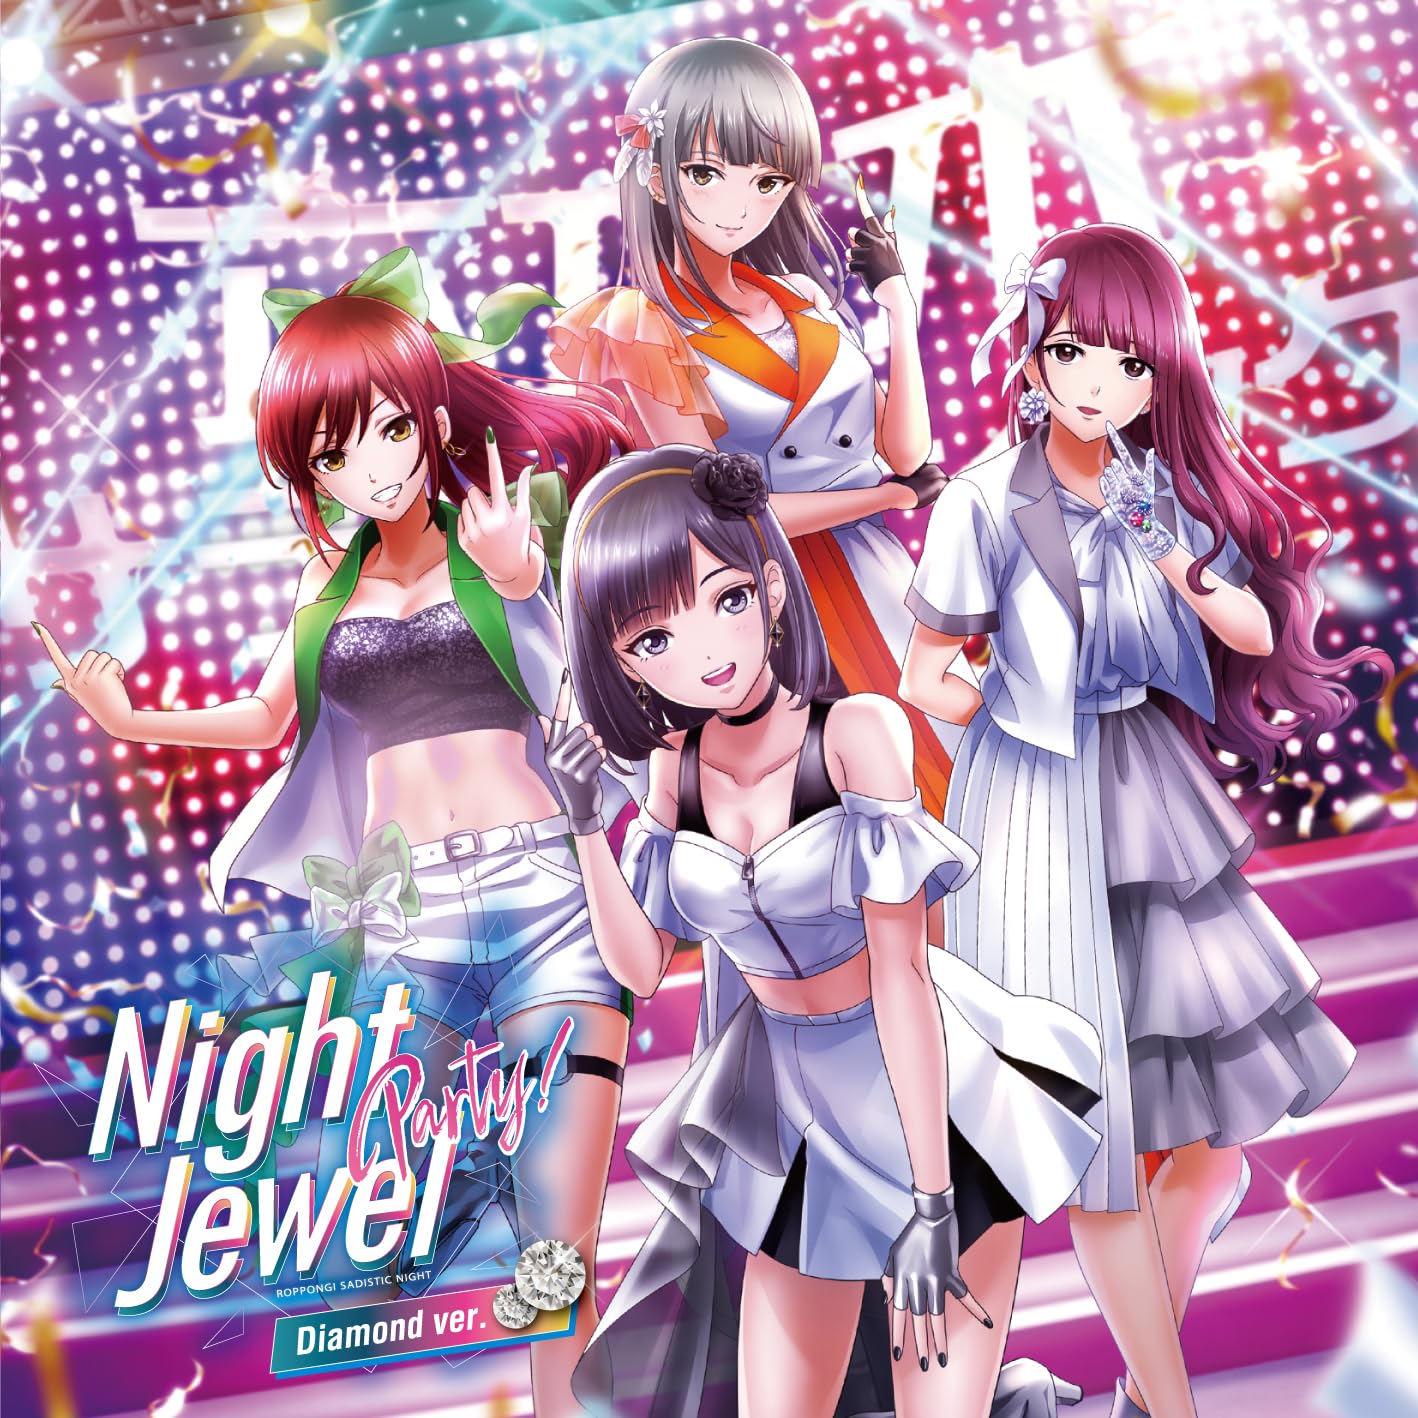 [CD] Roppongi Sadistic Night Night Jewel Party Diamond Ver. KICS-4117 Game Music